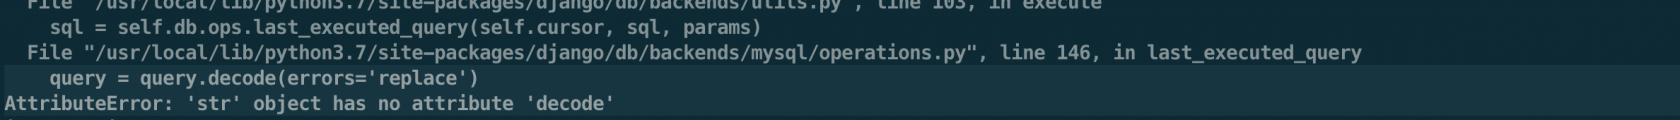 关于python3不支持MySQLdb的说法